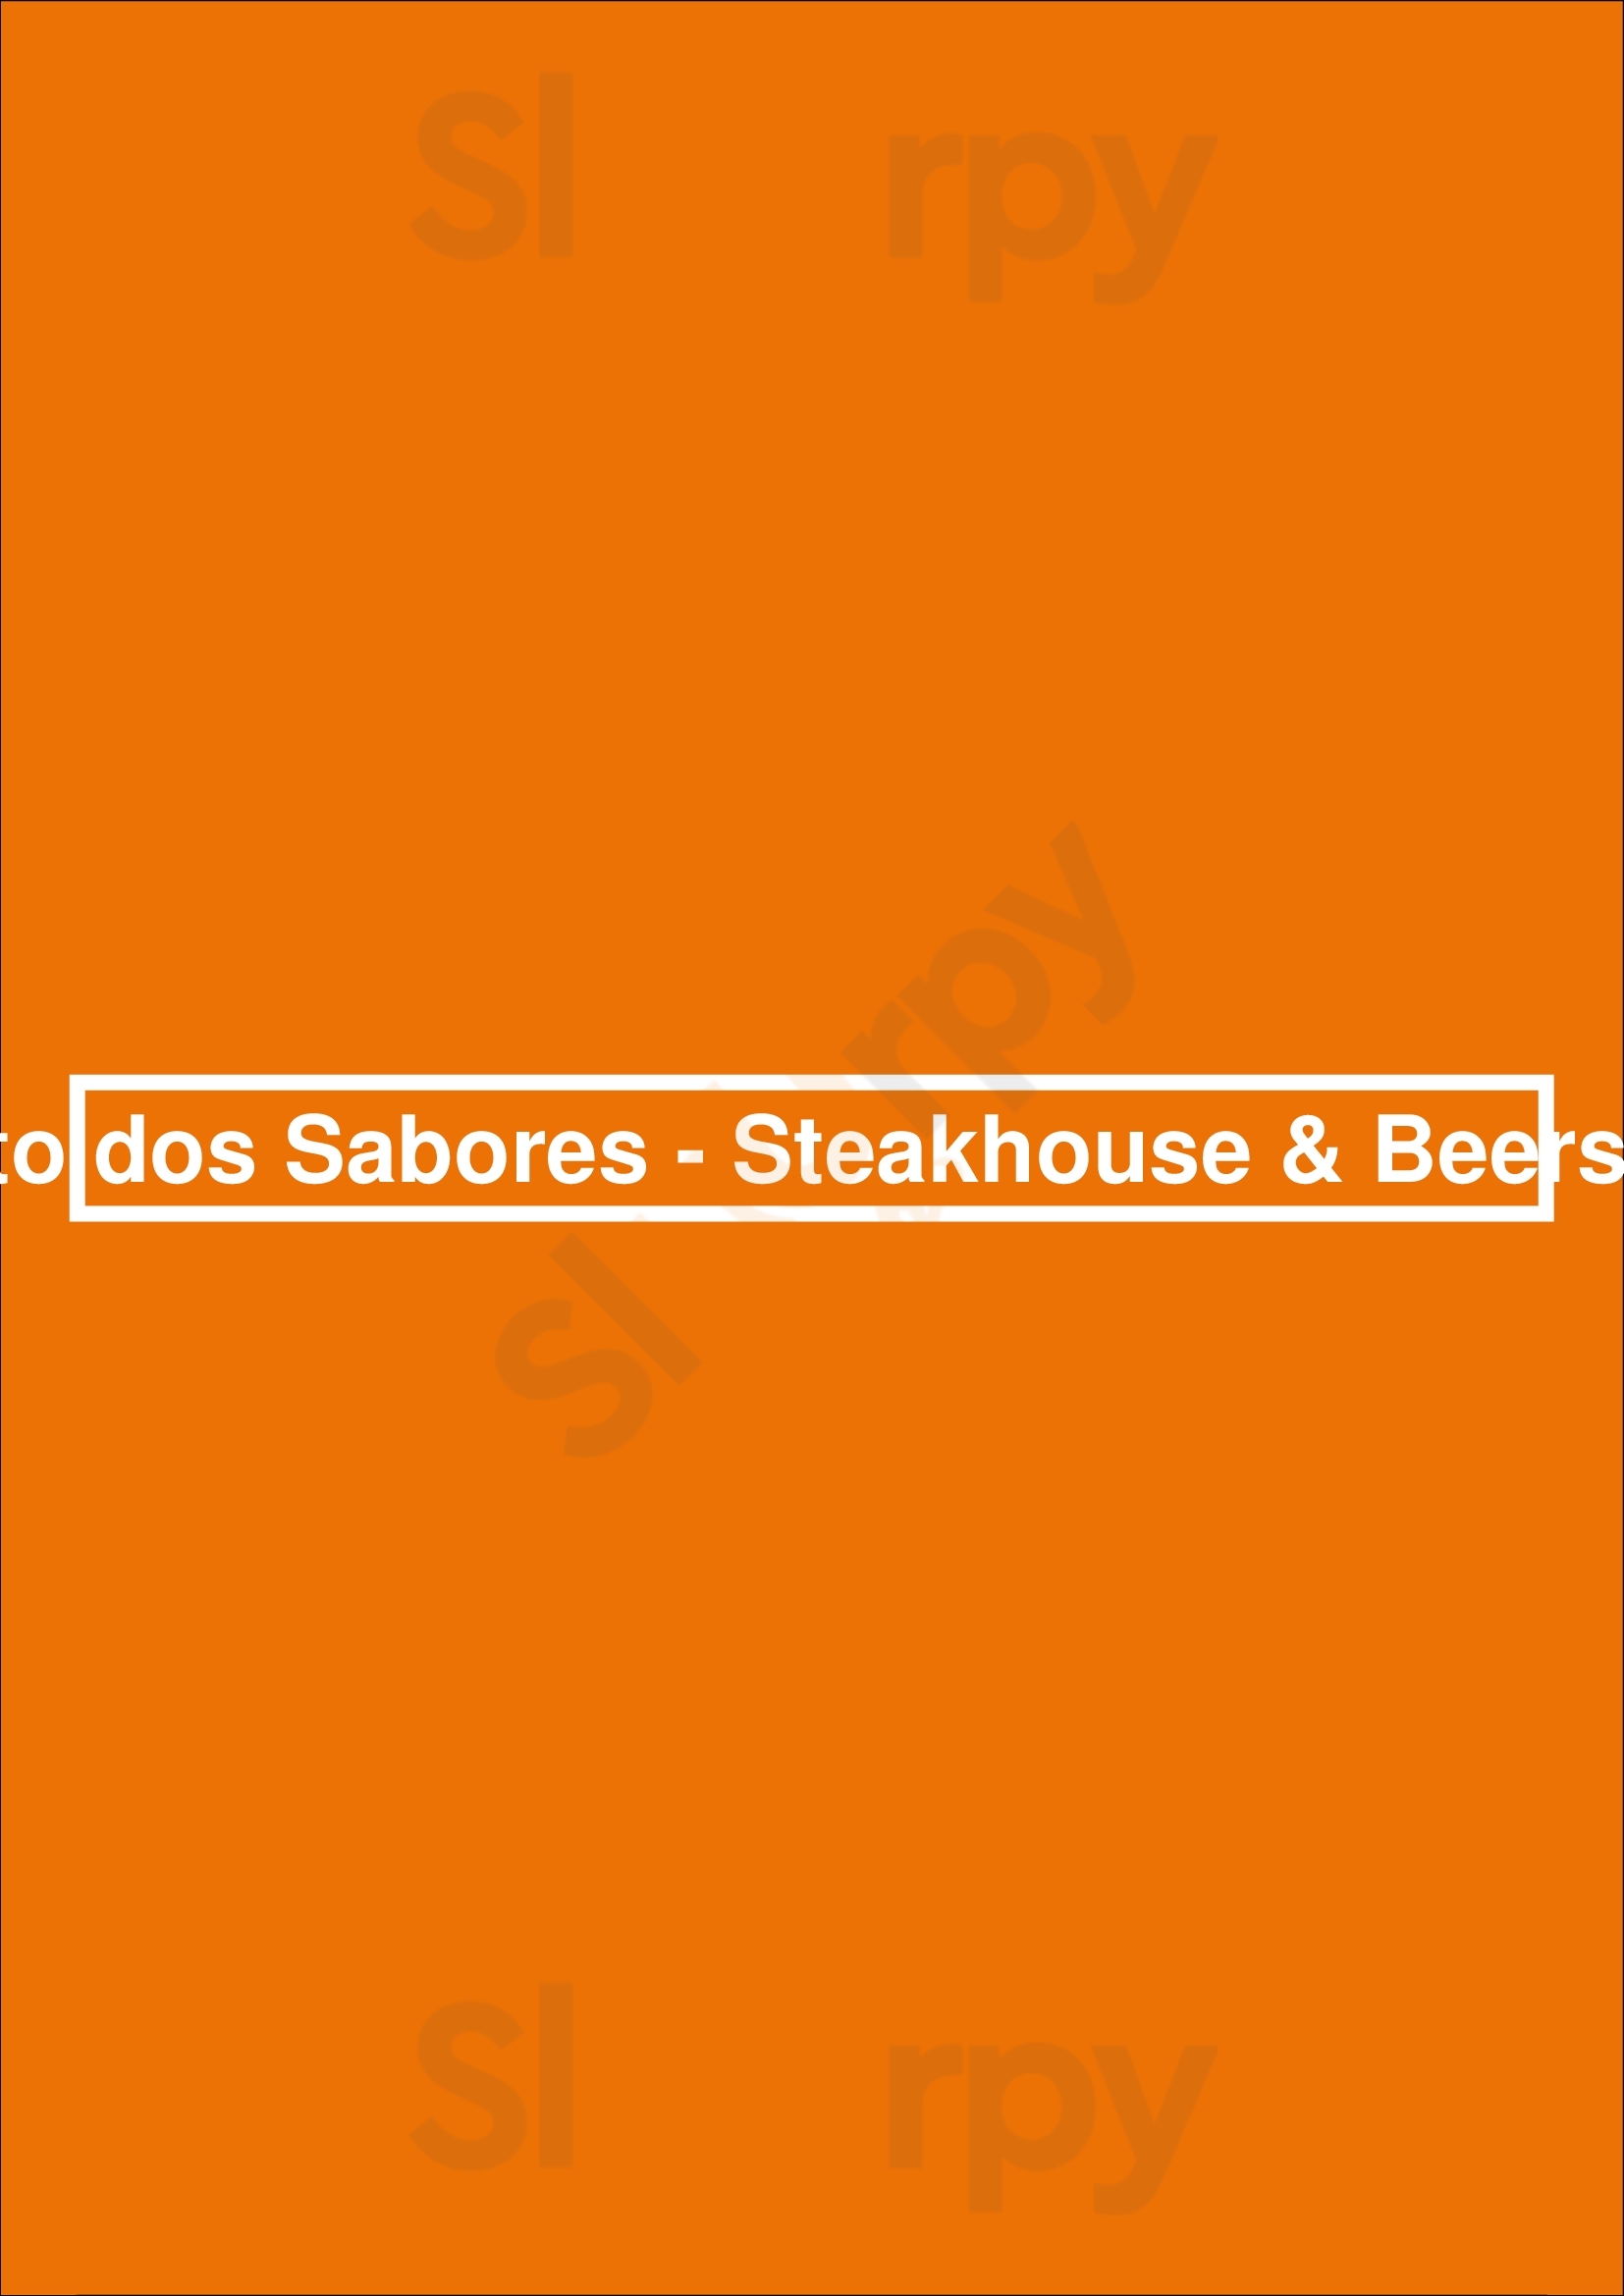 Porto Dos Sabores - Steakhouse & Beershop Porto Menu - 1